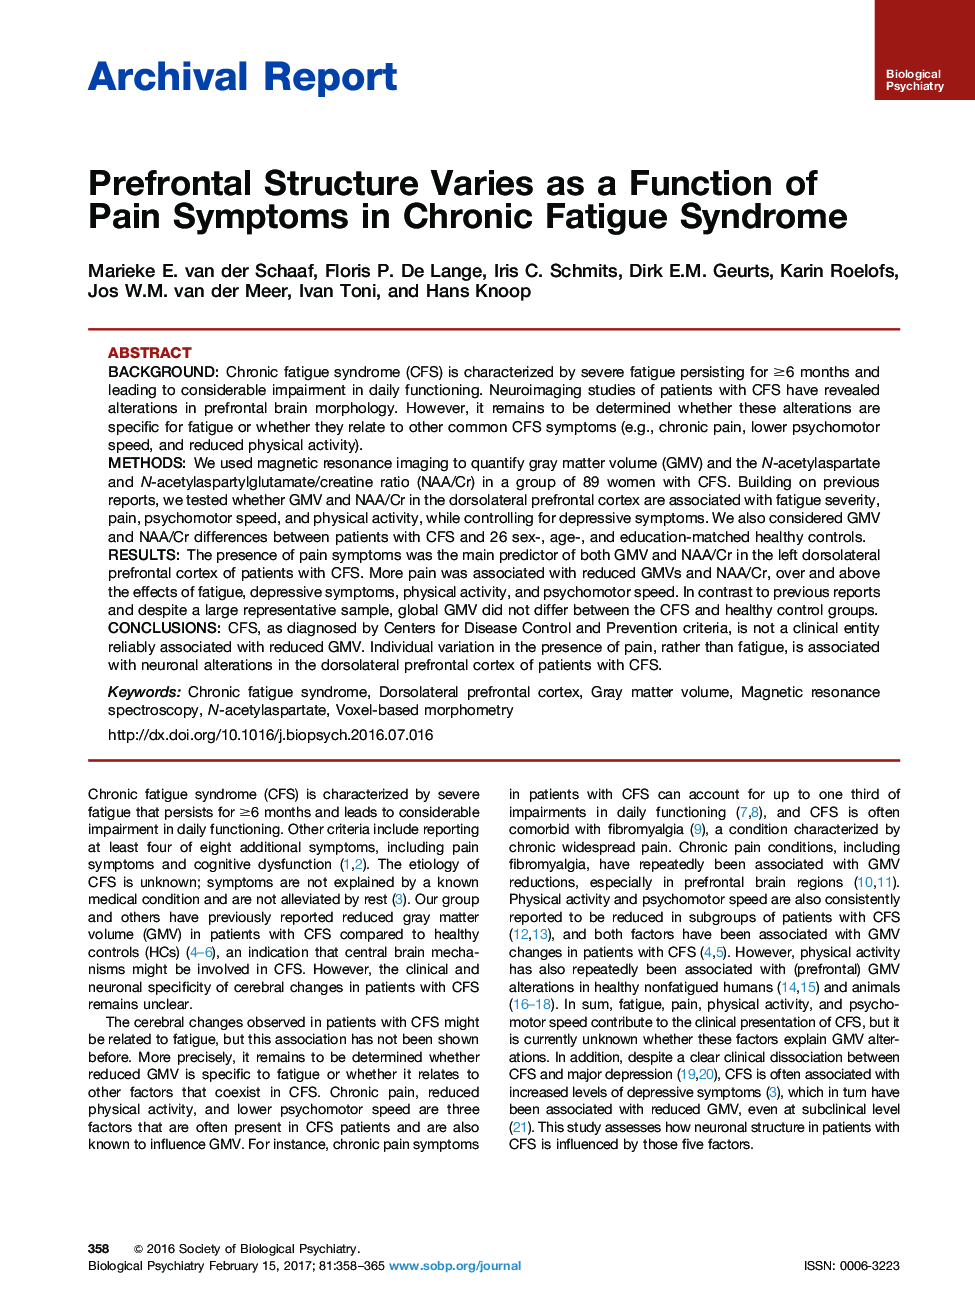 گزارش بایگانی گزارش شده است که ساختار پیش ساز افتراقی به عنوان یک عامل نشانه های درد در سندرم خستگی مزمن 